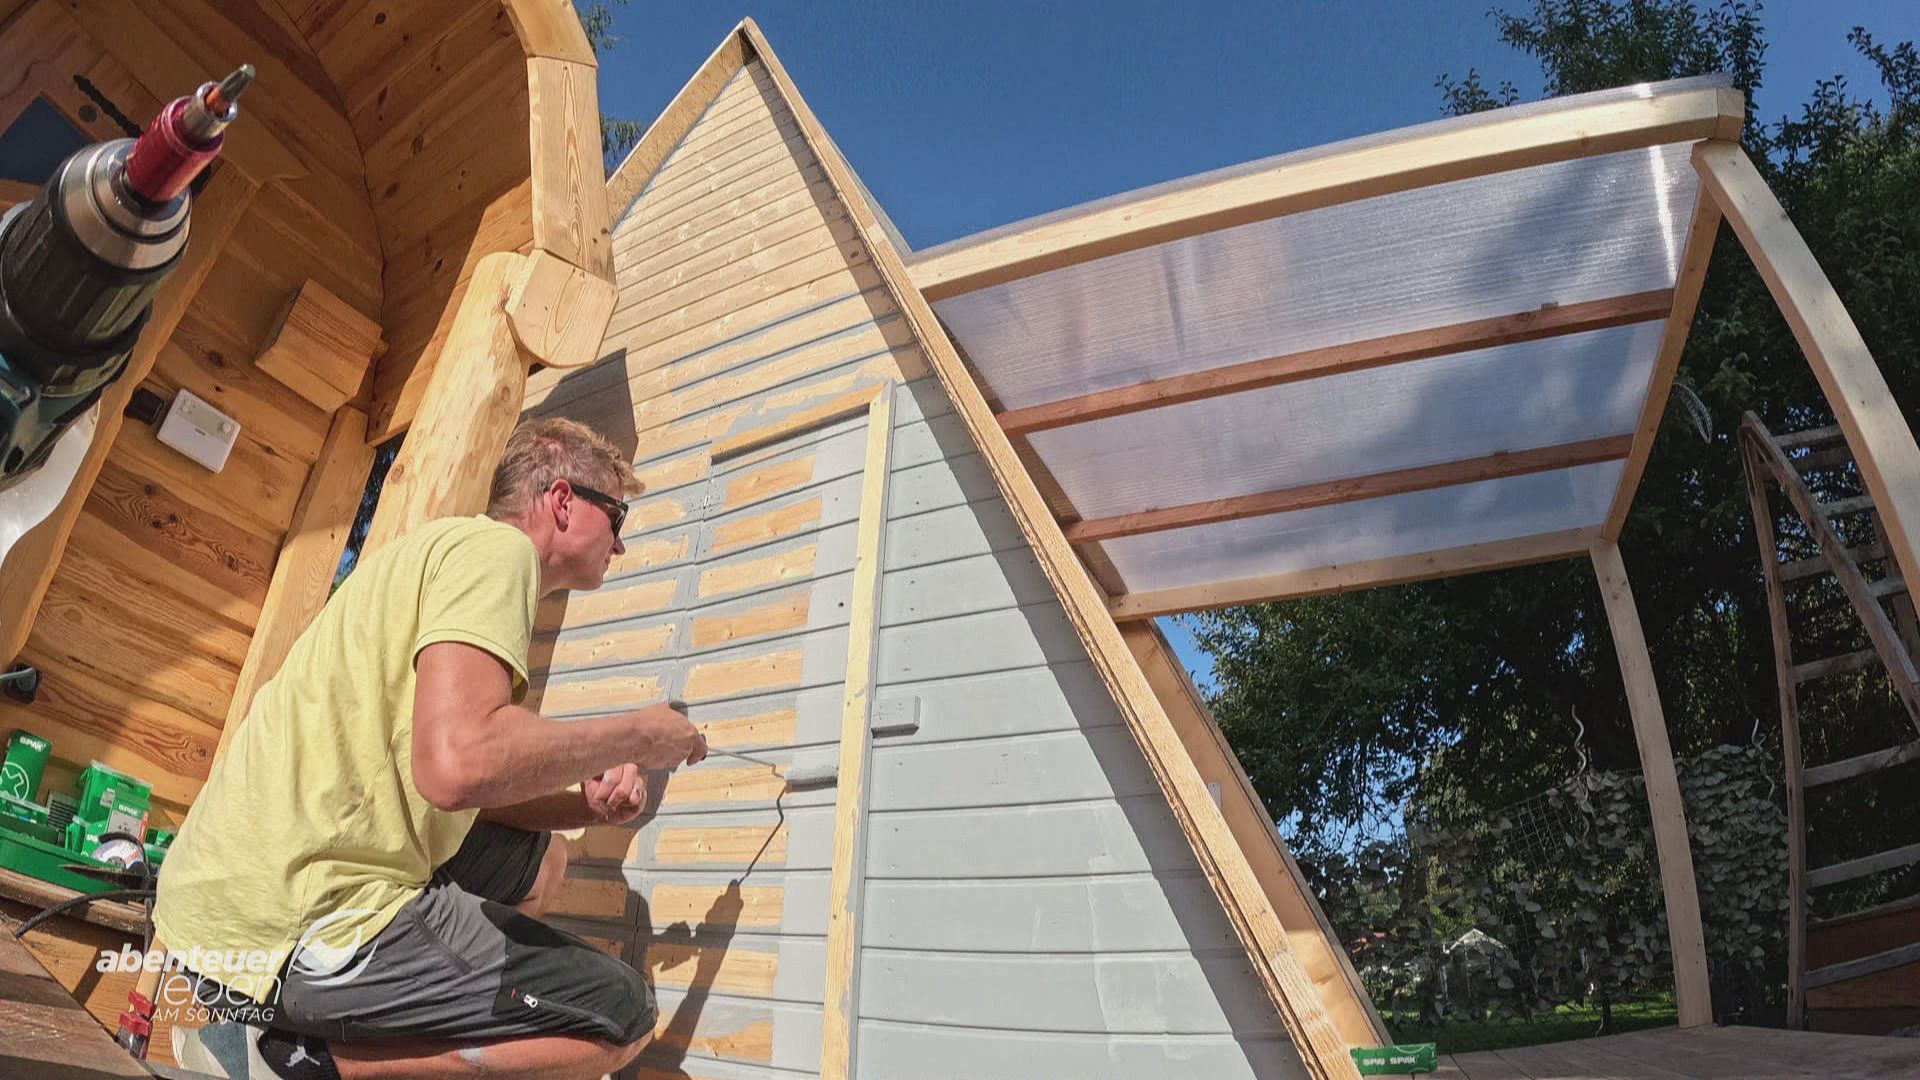 Die A-Frame-Hütte - der günstige Gartenhütten-Trend aus den USA